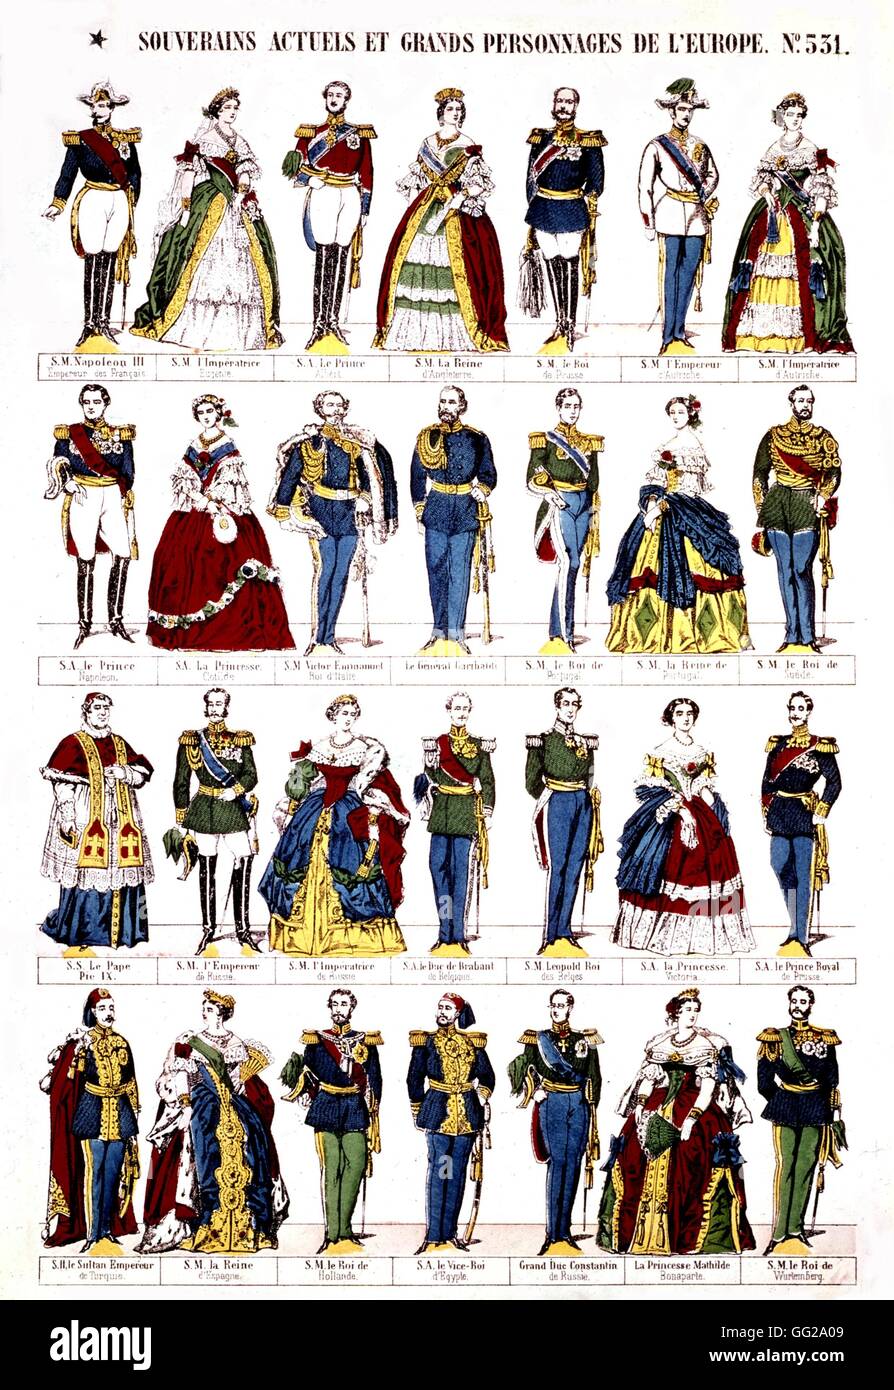 Epinal populaires imprimer les monarques et caractères du Second Empire la France du xixe siècle Banque D'Images